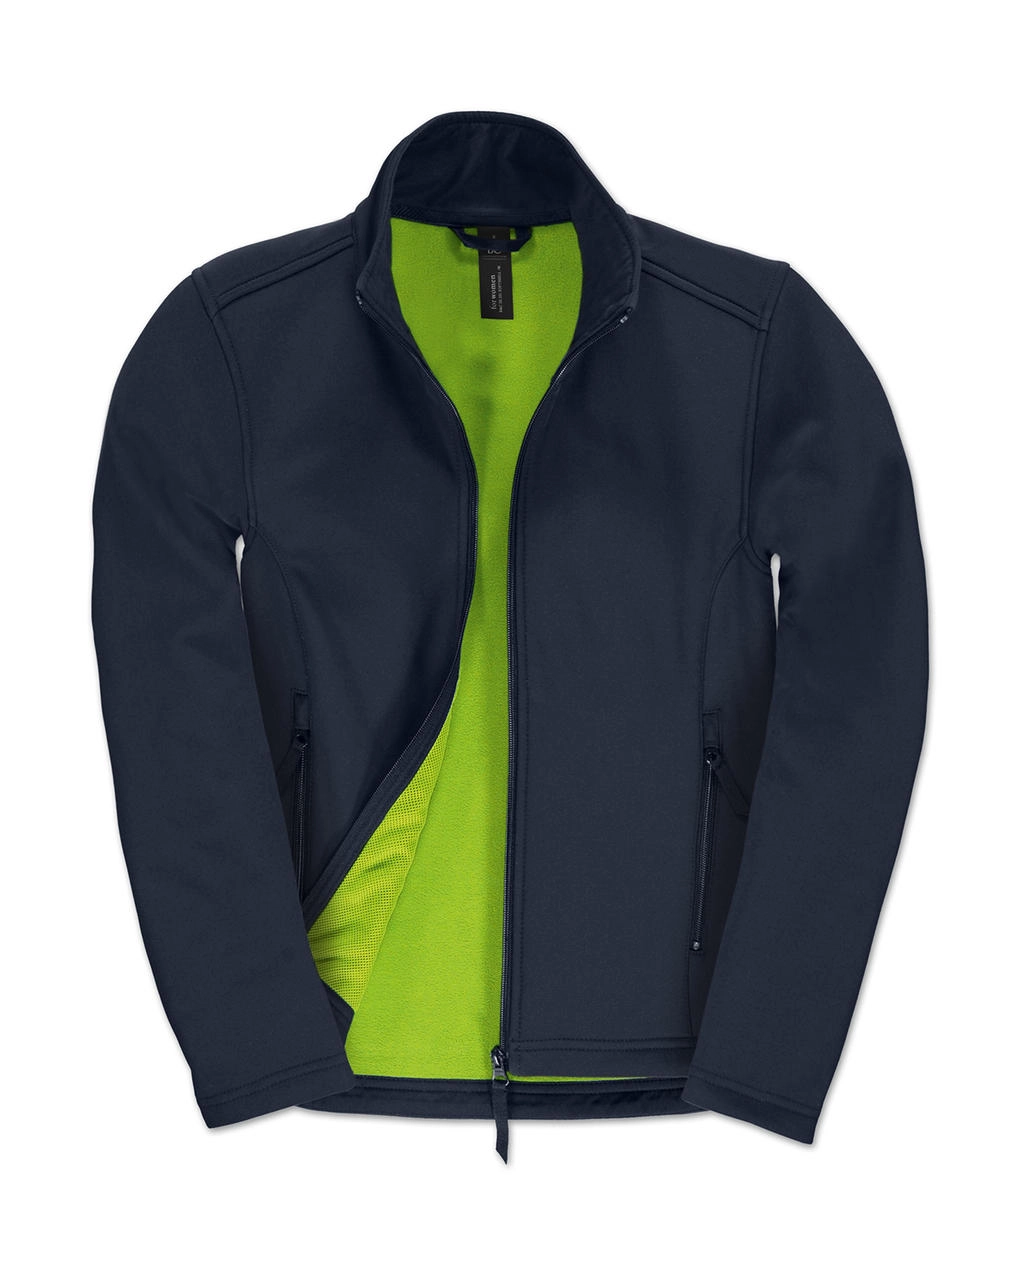 ID.701/women Softshell Jacket  zum Besticken und Bedrucken in der Farbe Navy/Neon Green mit Ihren Logo, Schriftzug oder Motiv.